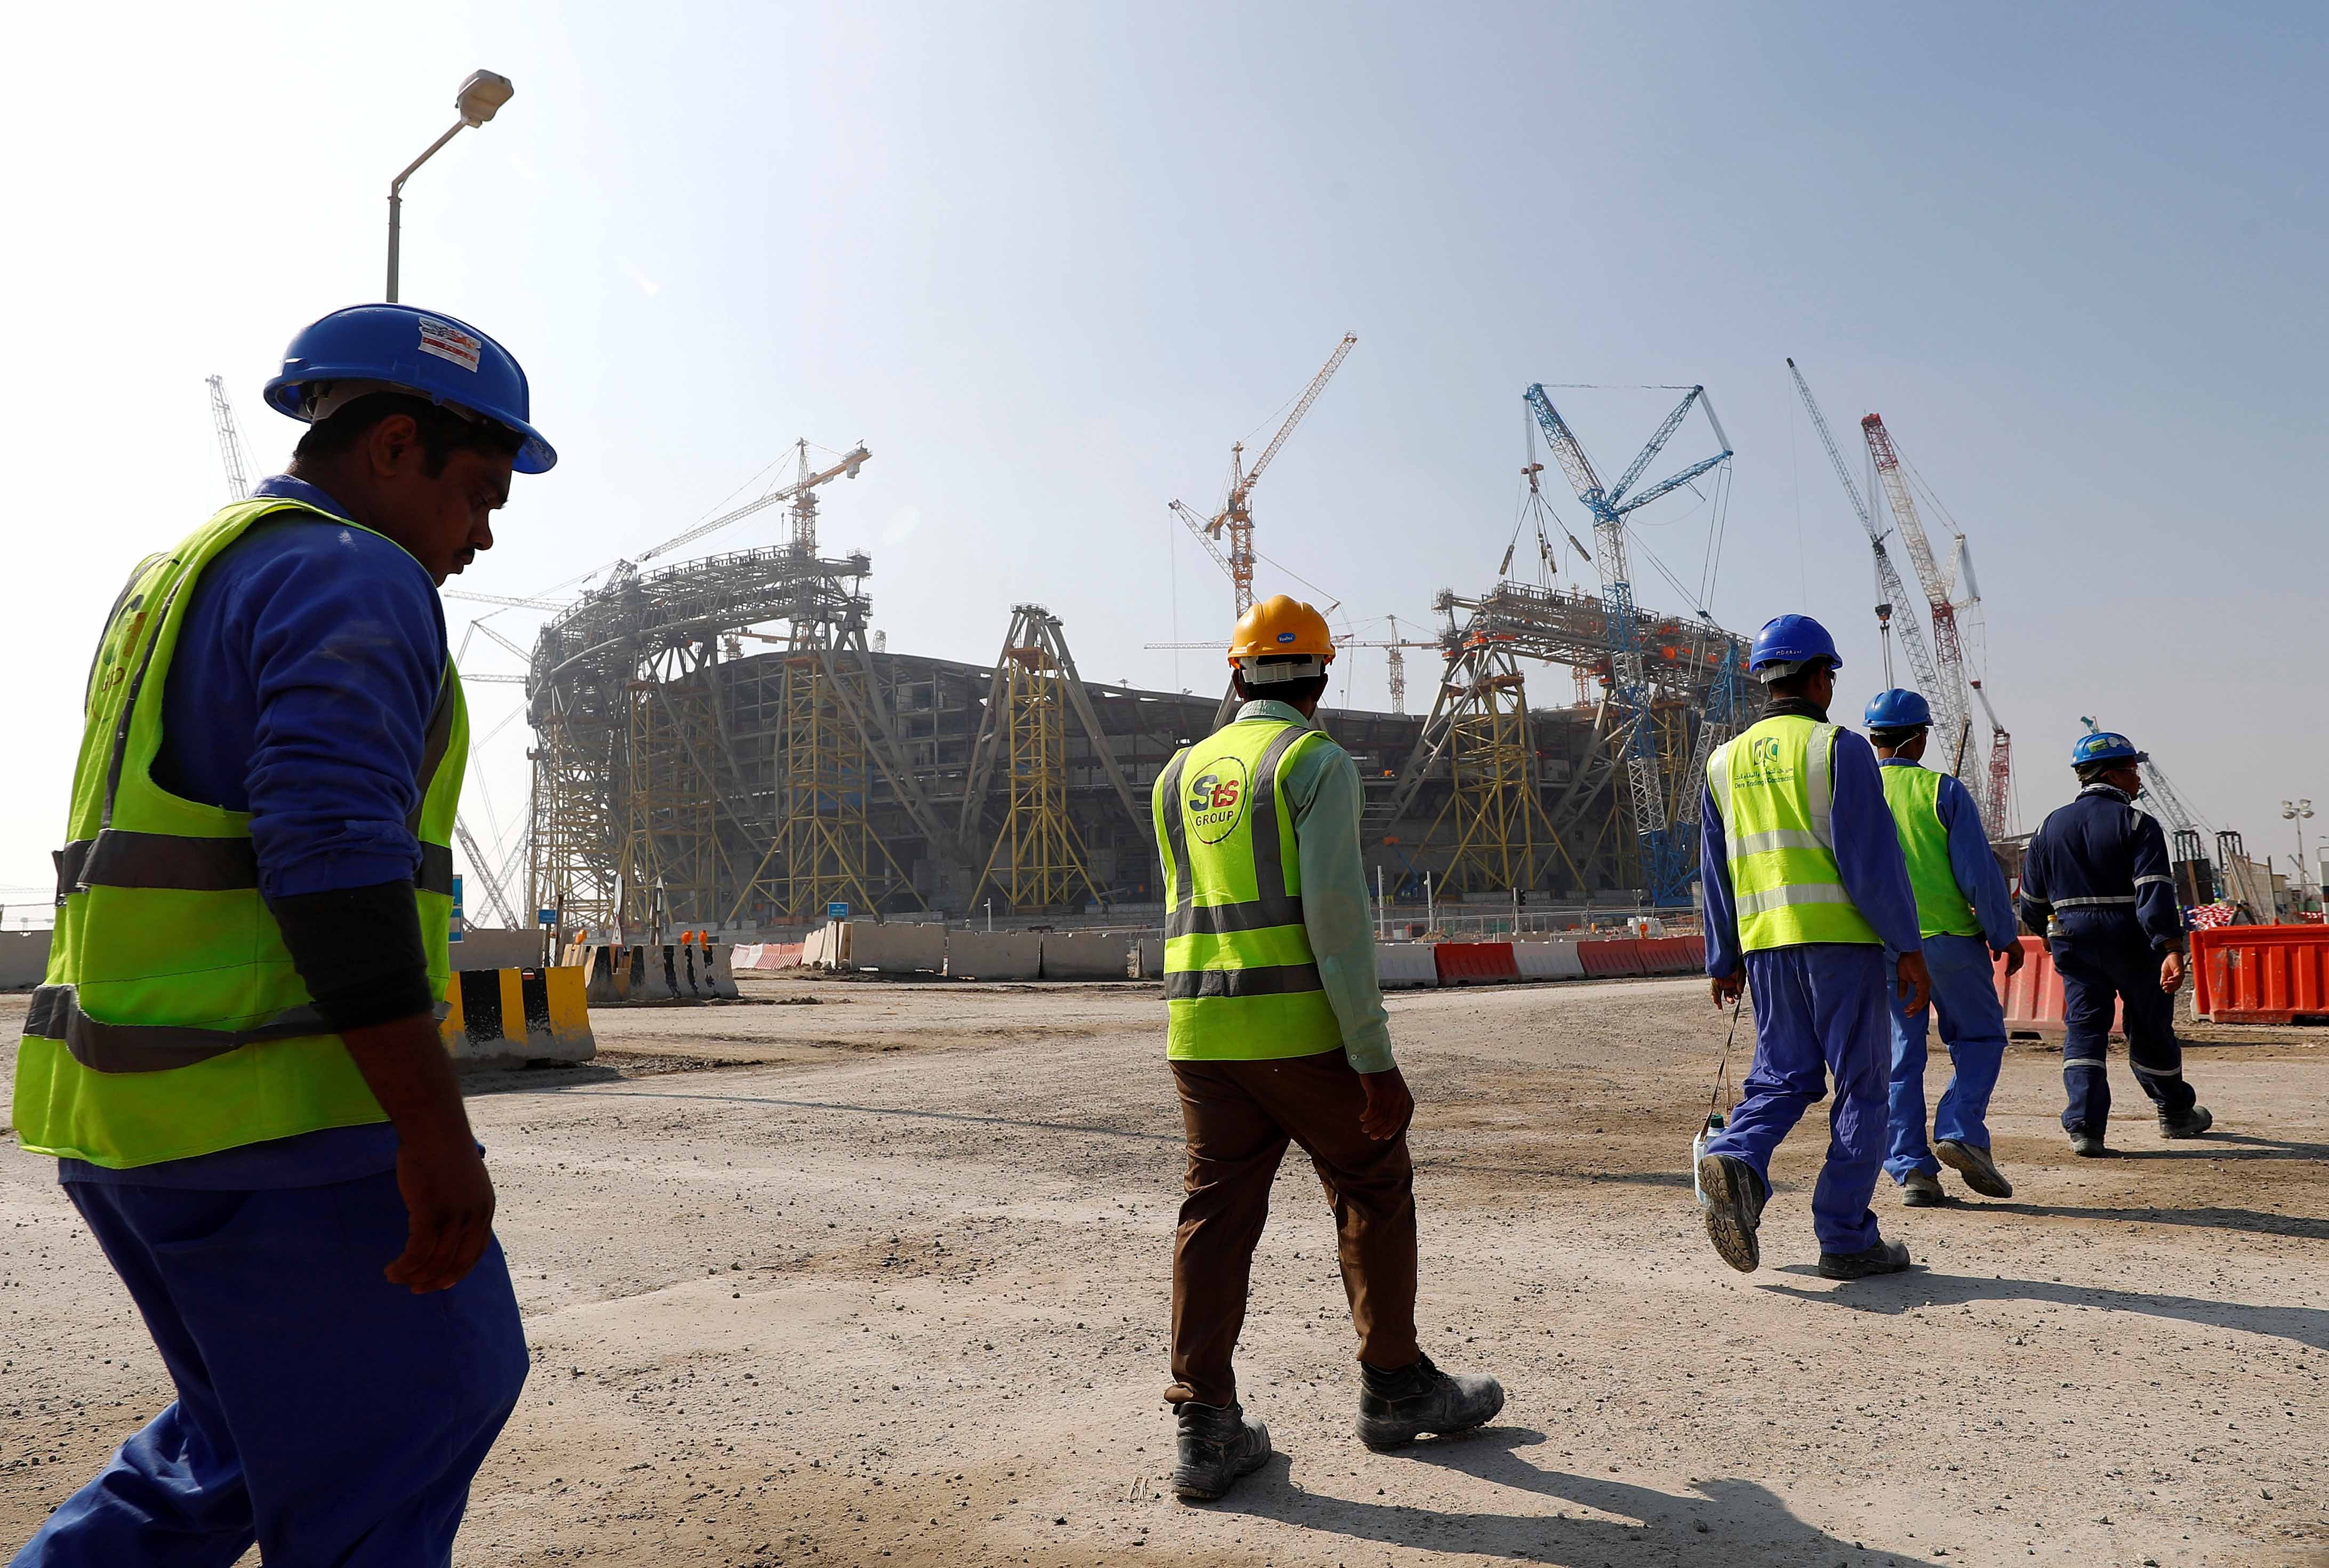 عمال يسيرون باتجاه ورشة ملعب لوسيل الذي سيُشيَّد لكأس العالم 2022 لكرة القدم، خلال جولة في الملعب في الدوحة، قطر، 20 ديسمبر/كانون الأول 2019. 